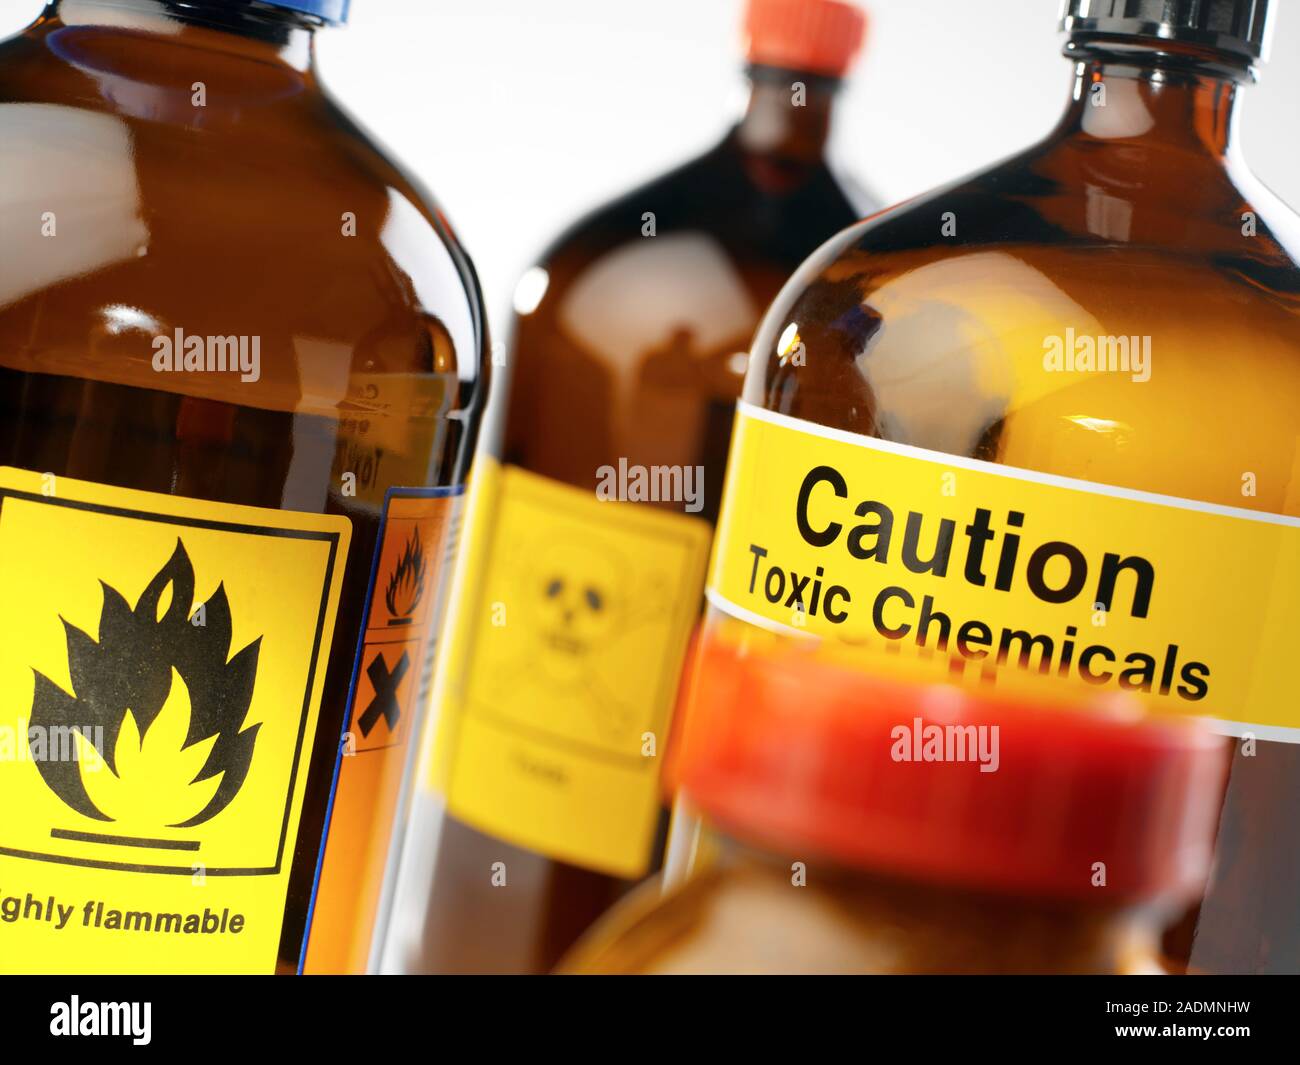 Los productos químicos peligrosos. Los recipientes etiquetados con señales  de advertencia de la peligrosidad de los productos químicos. Los signos  observados aquí advertir sobre los productos químicos tóxicos que pueden  envenenar a